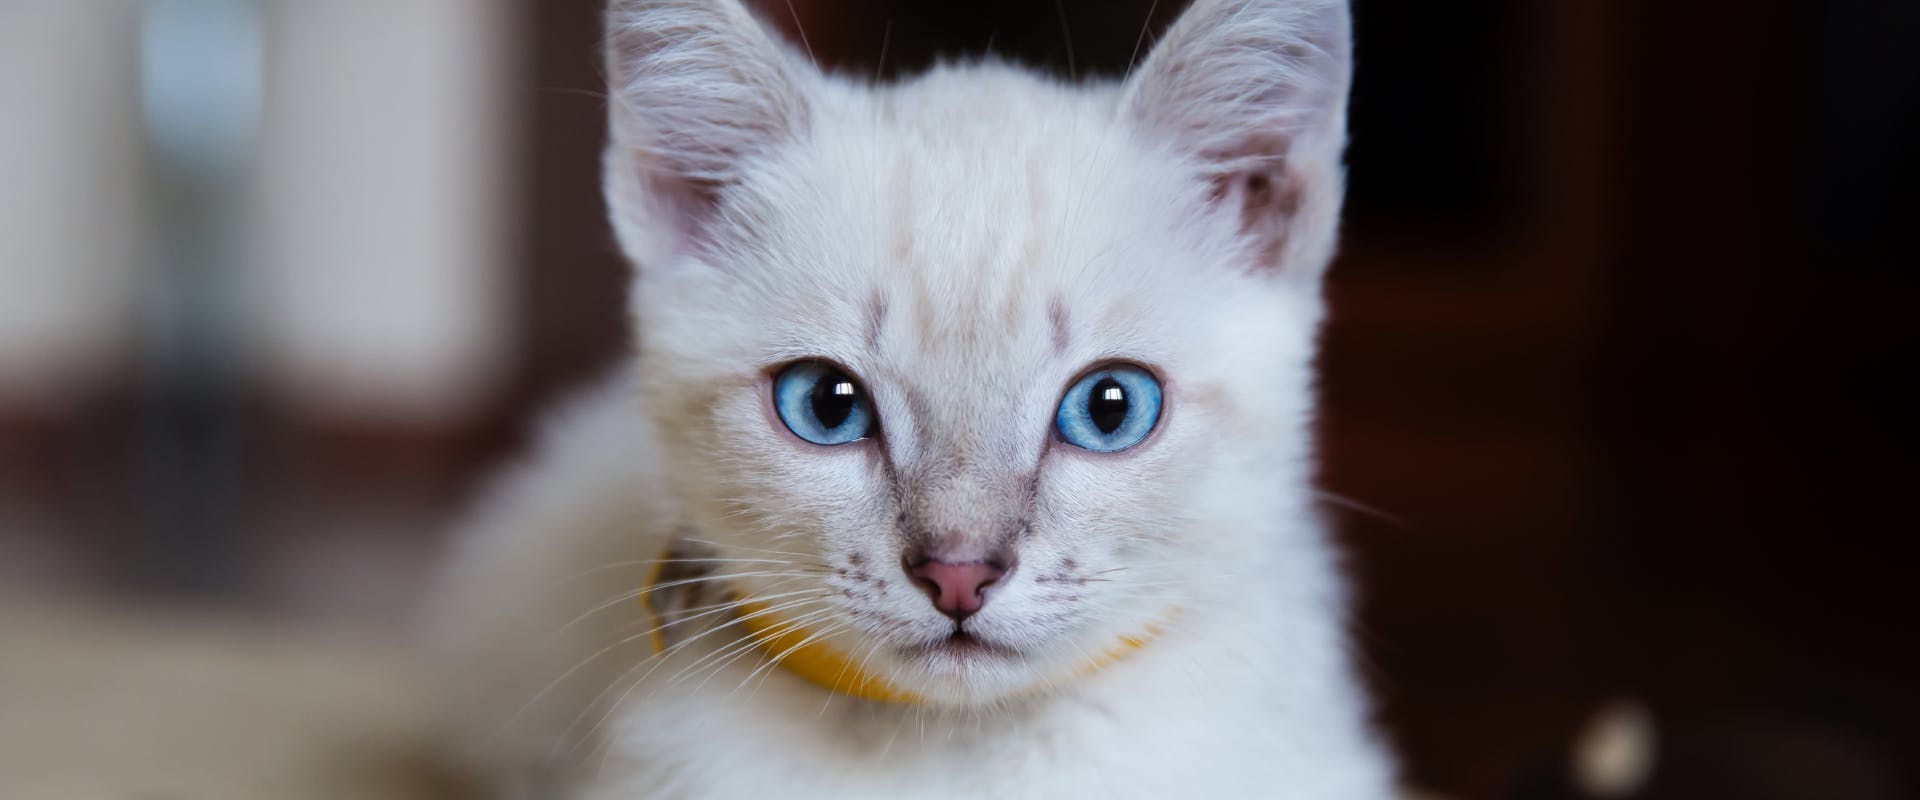 A kitten wearing a yellow collar.